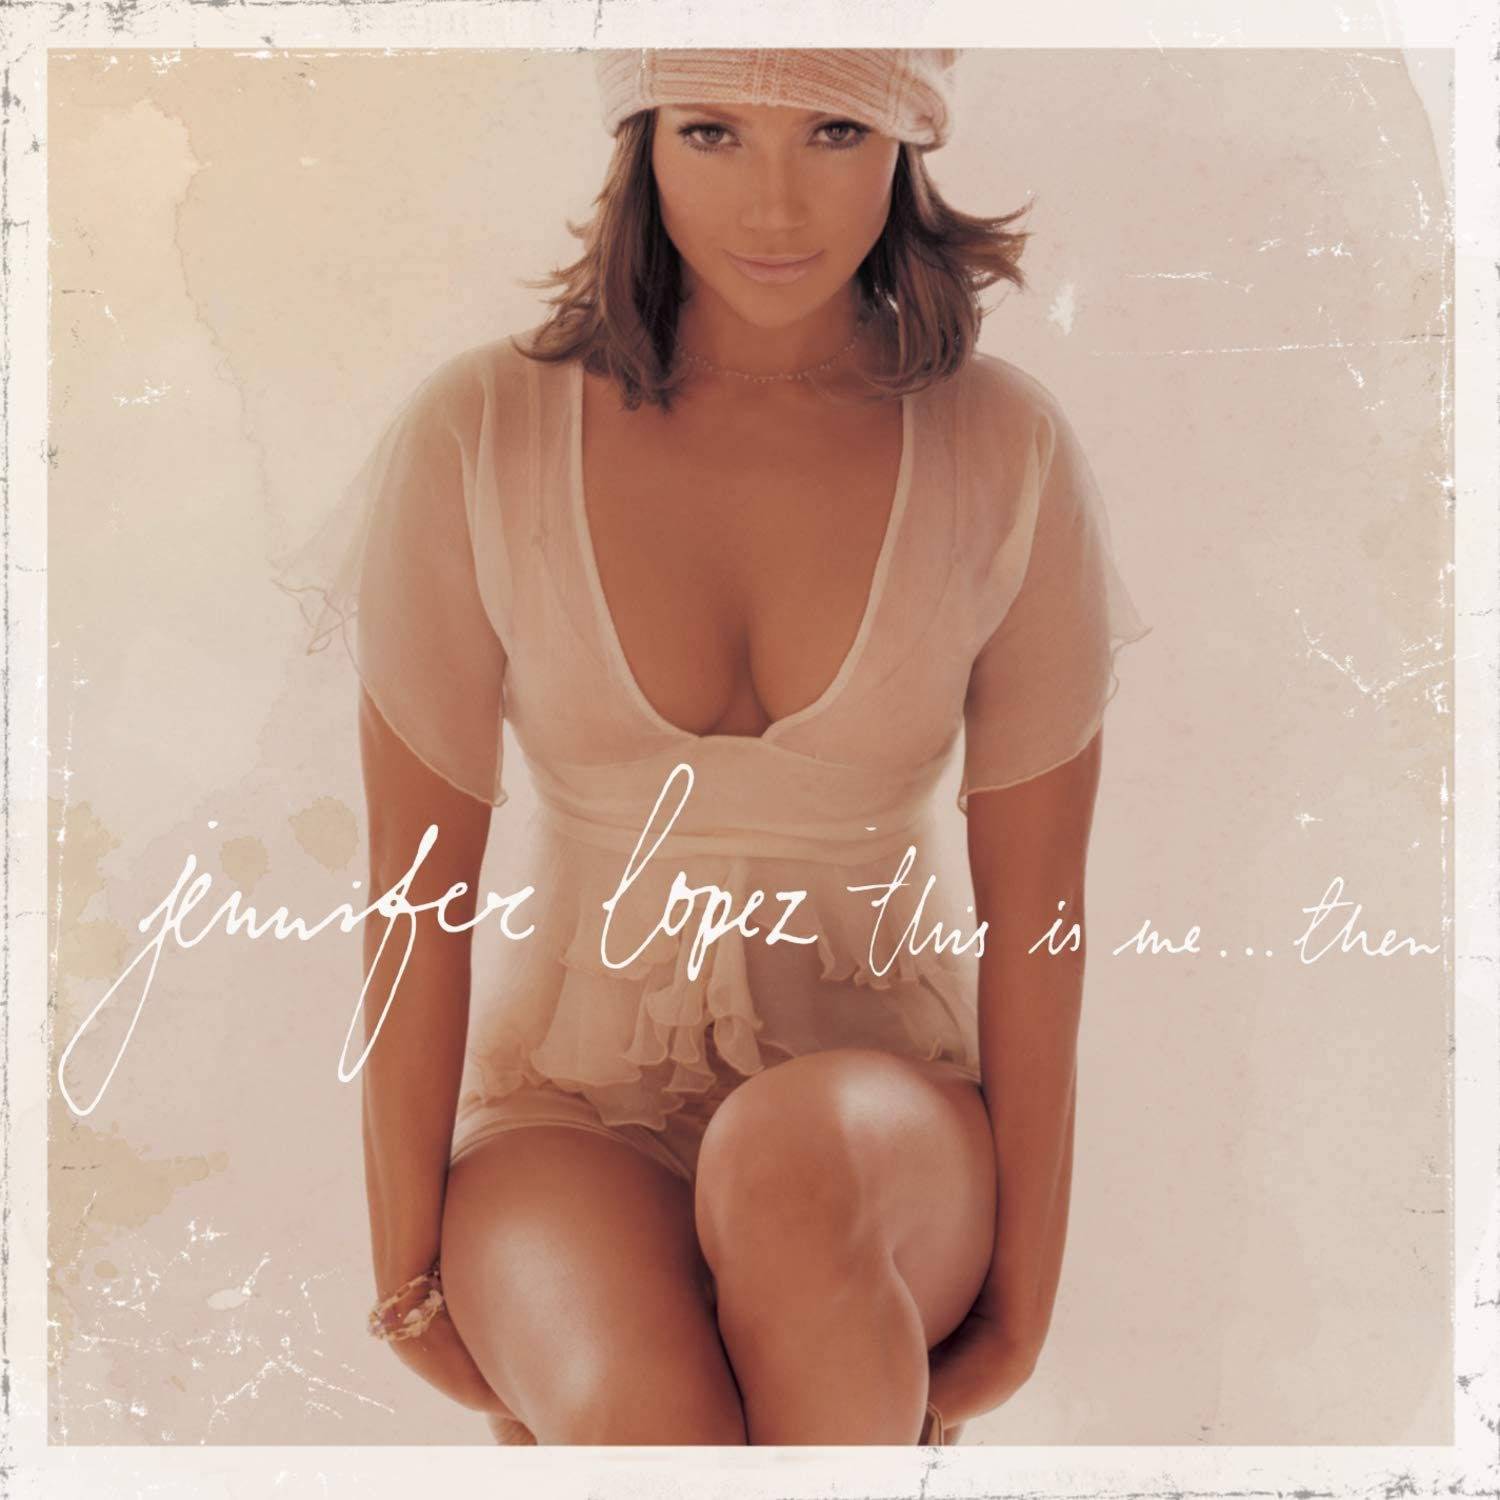 La chanteuse Jennifer Lopez sur la pochette de l'album “This is me… Then” sorti en 2002.